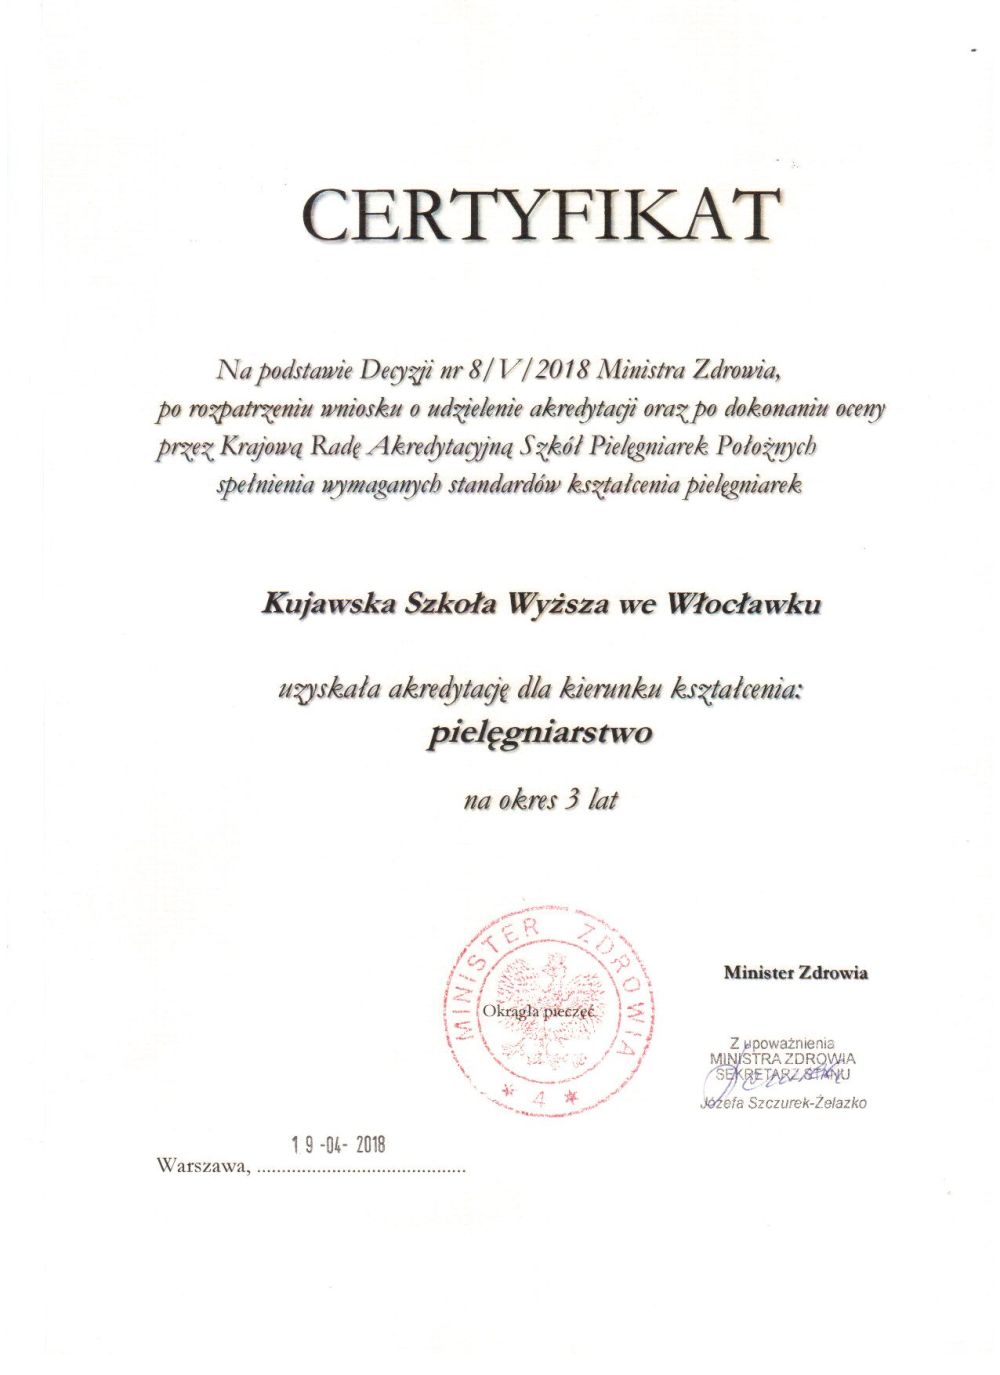 2018 05 16 certyfikat pielegniarstwo